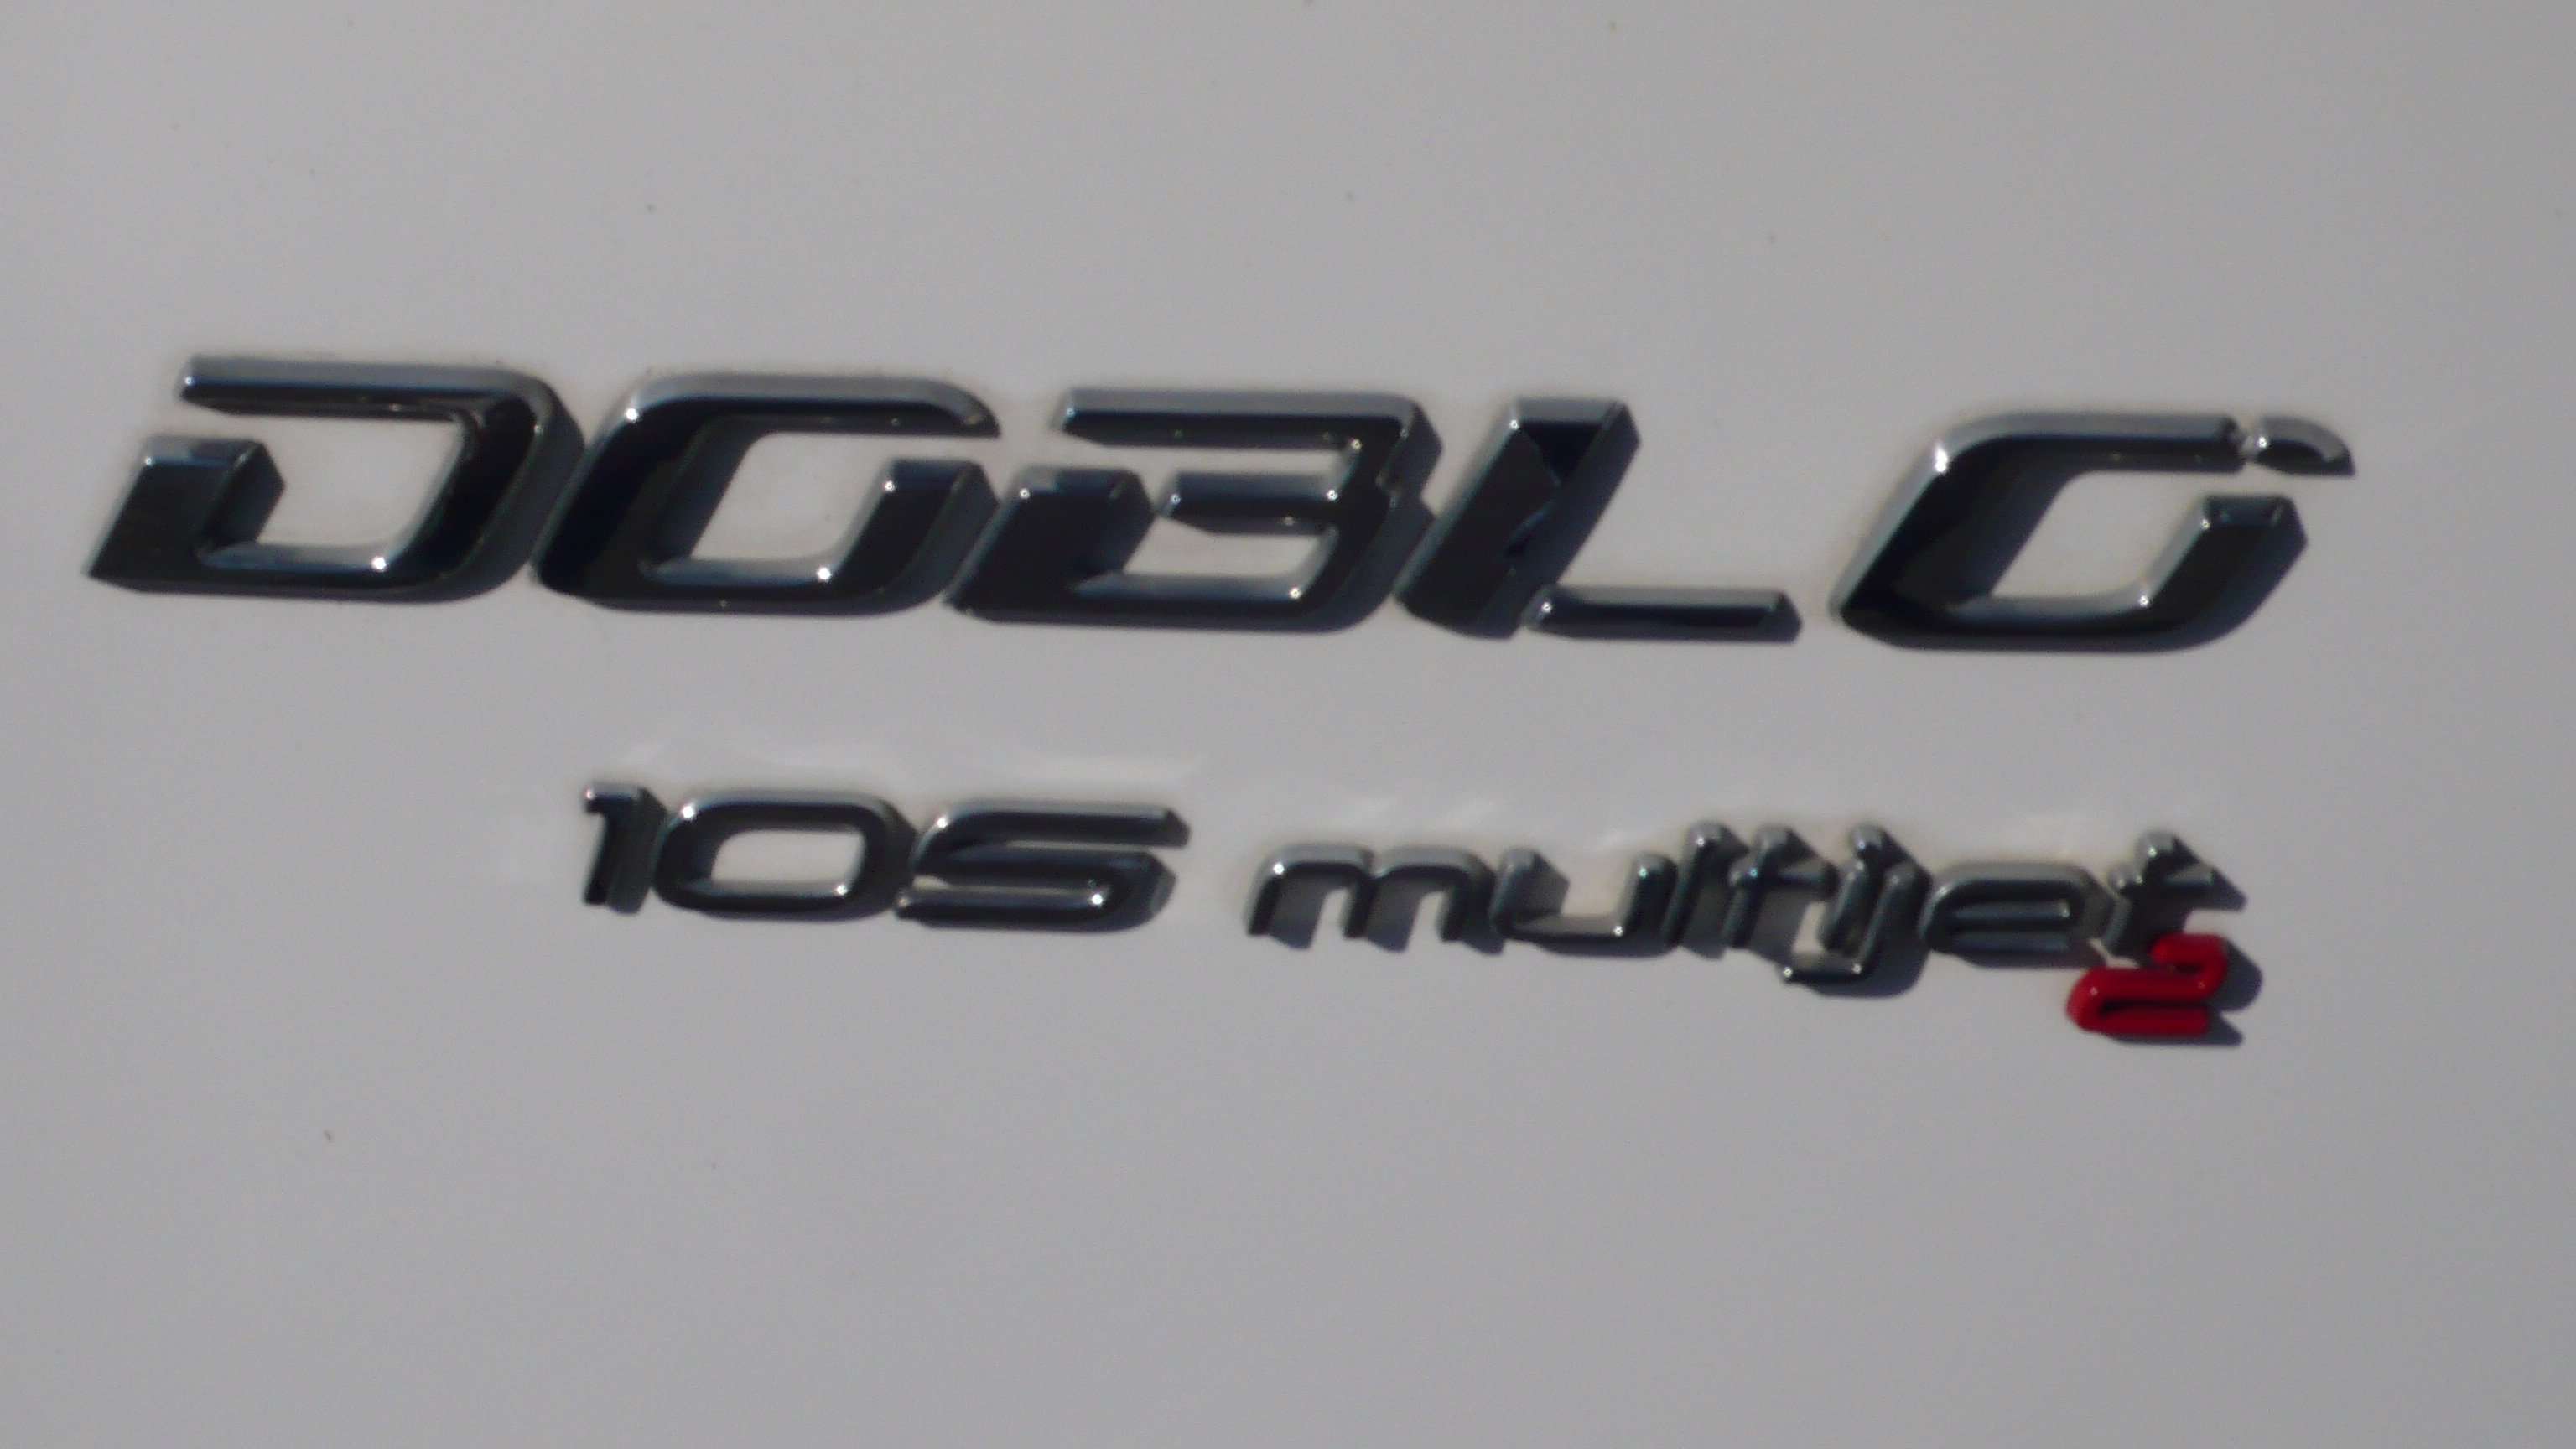 Fiat Doblo 3 zitplaatsen 105 pk 4900 km   9250 euro Garage Frank Mesure